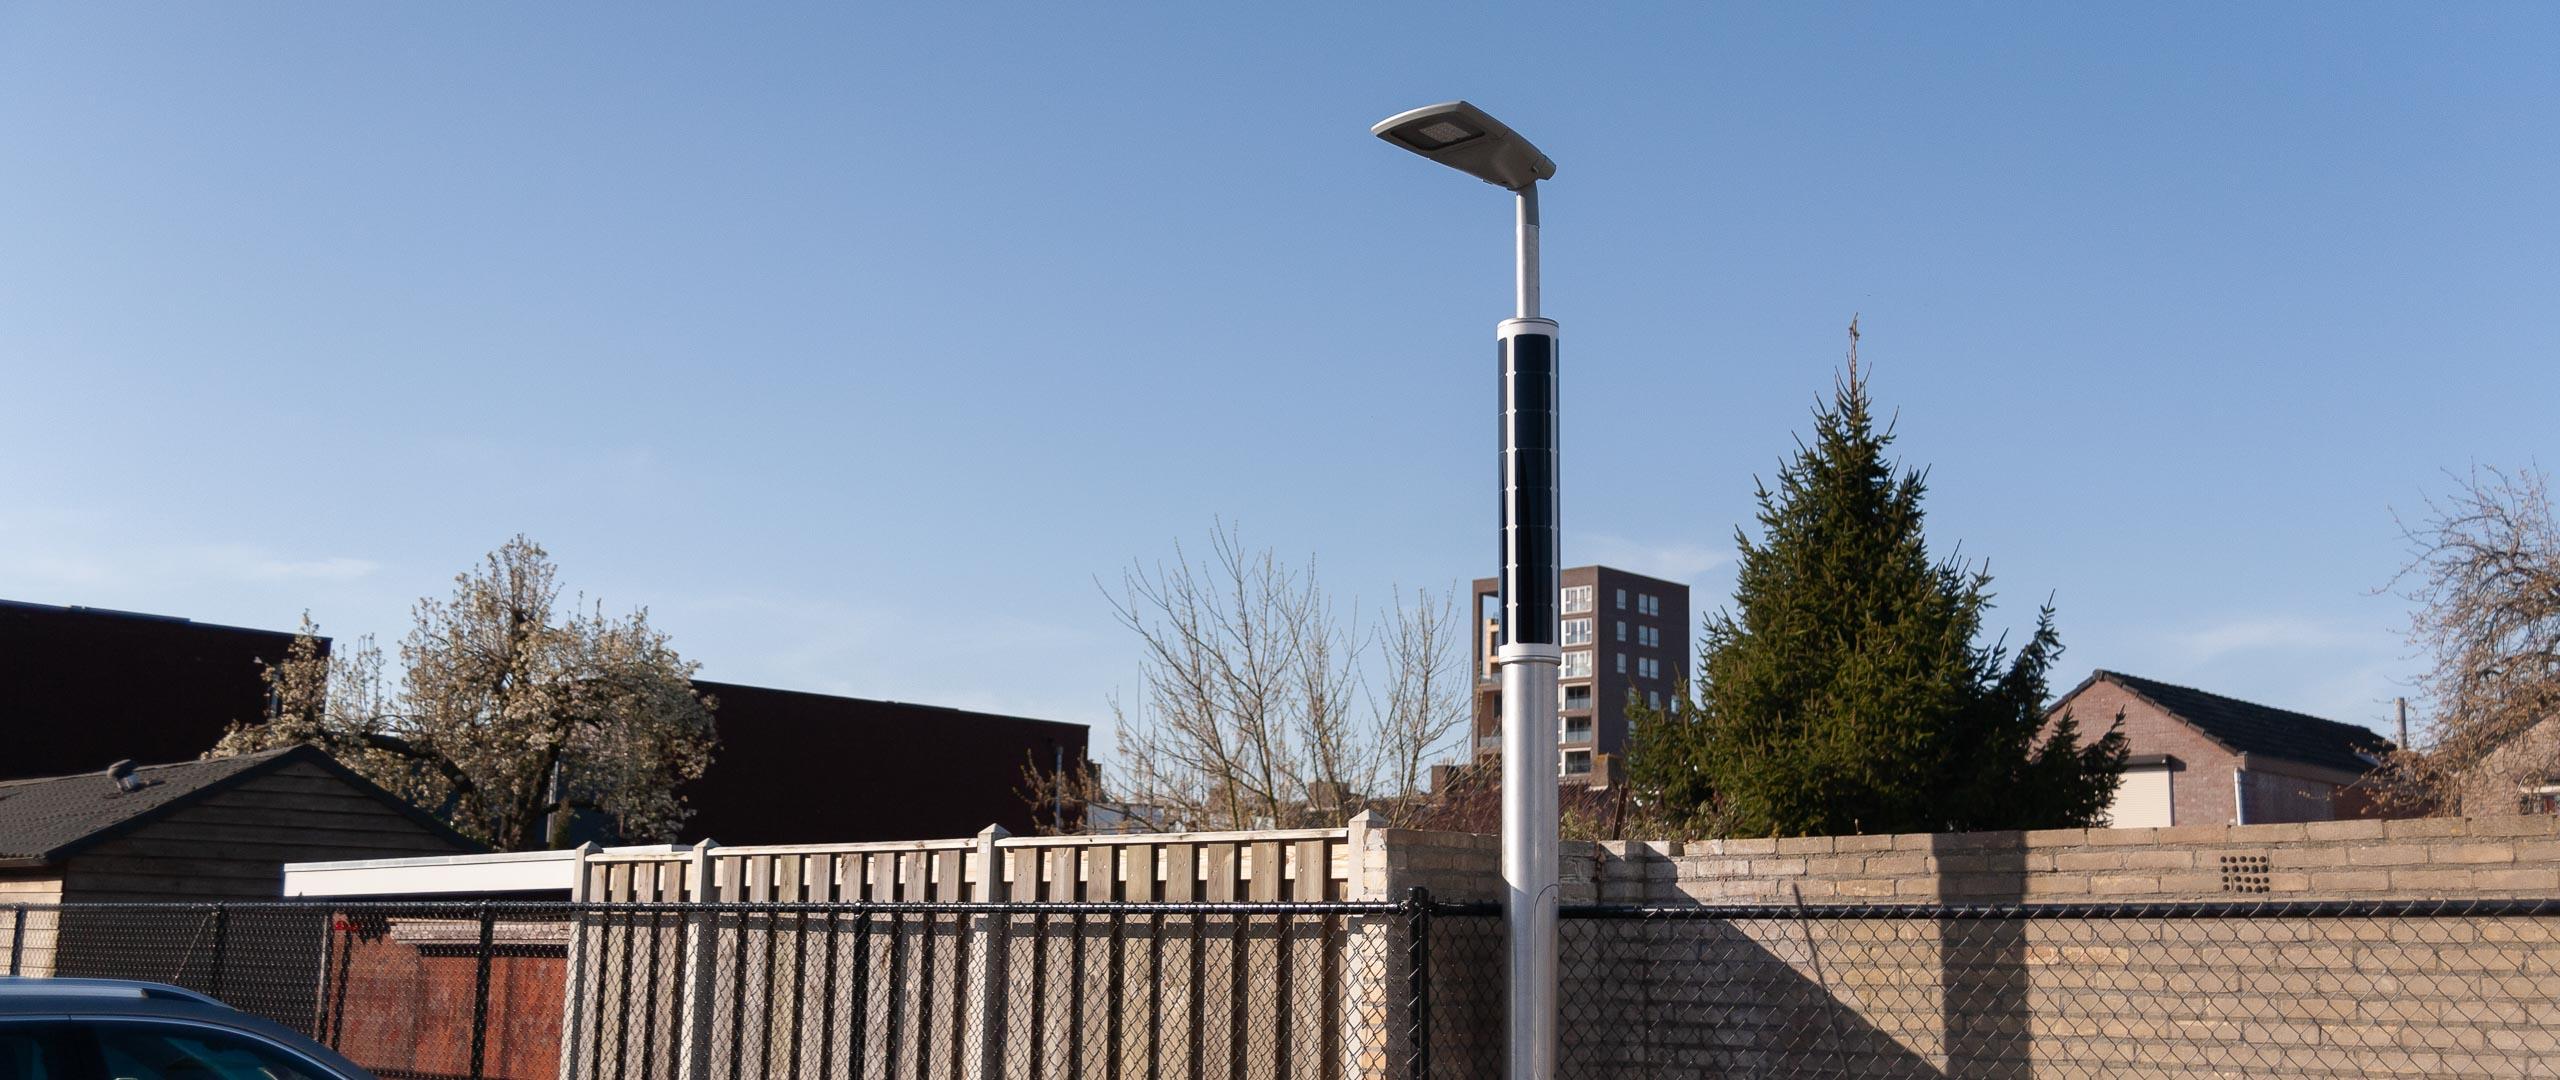 Parkeerplaatsverlichting op zonne-energie in Roosendaal, Nederland